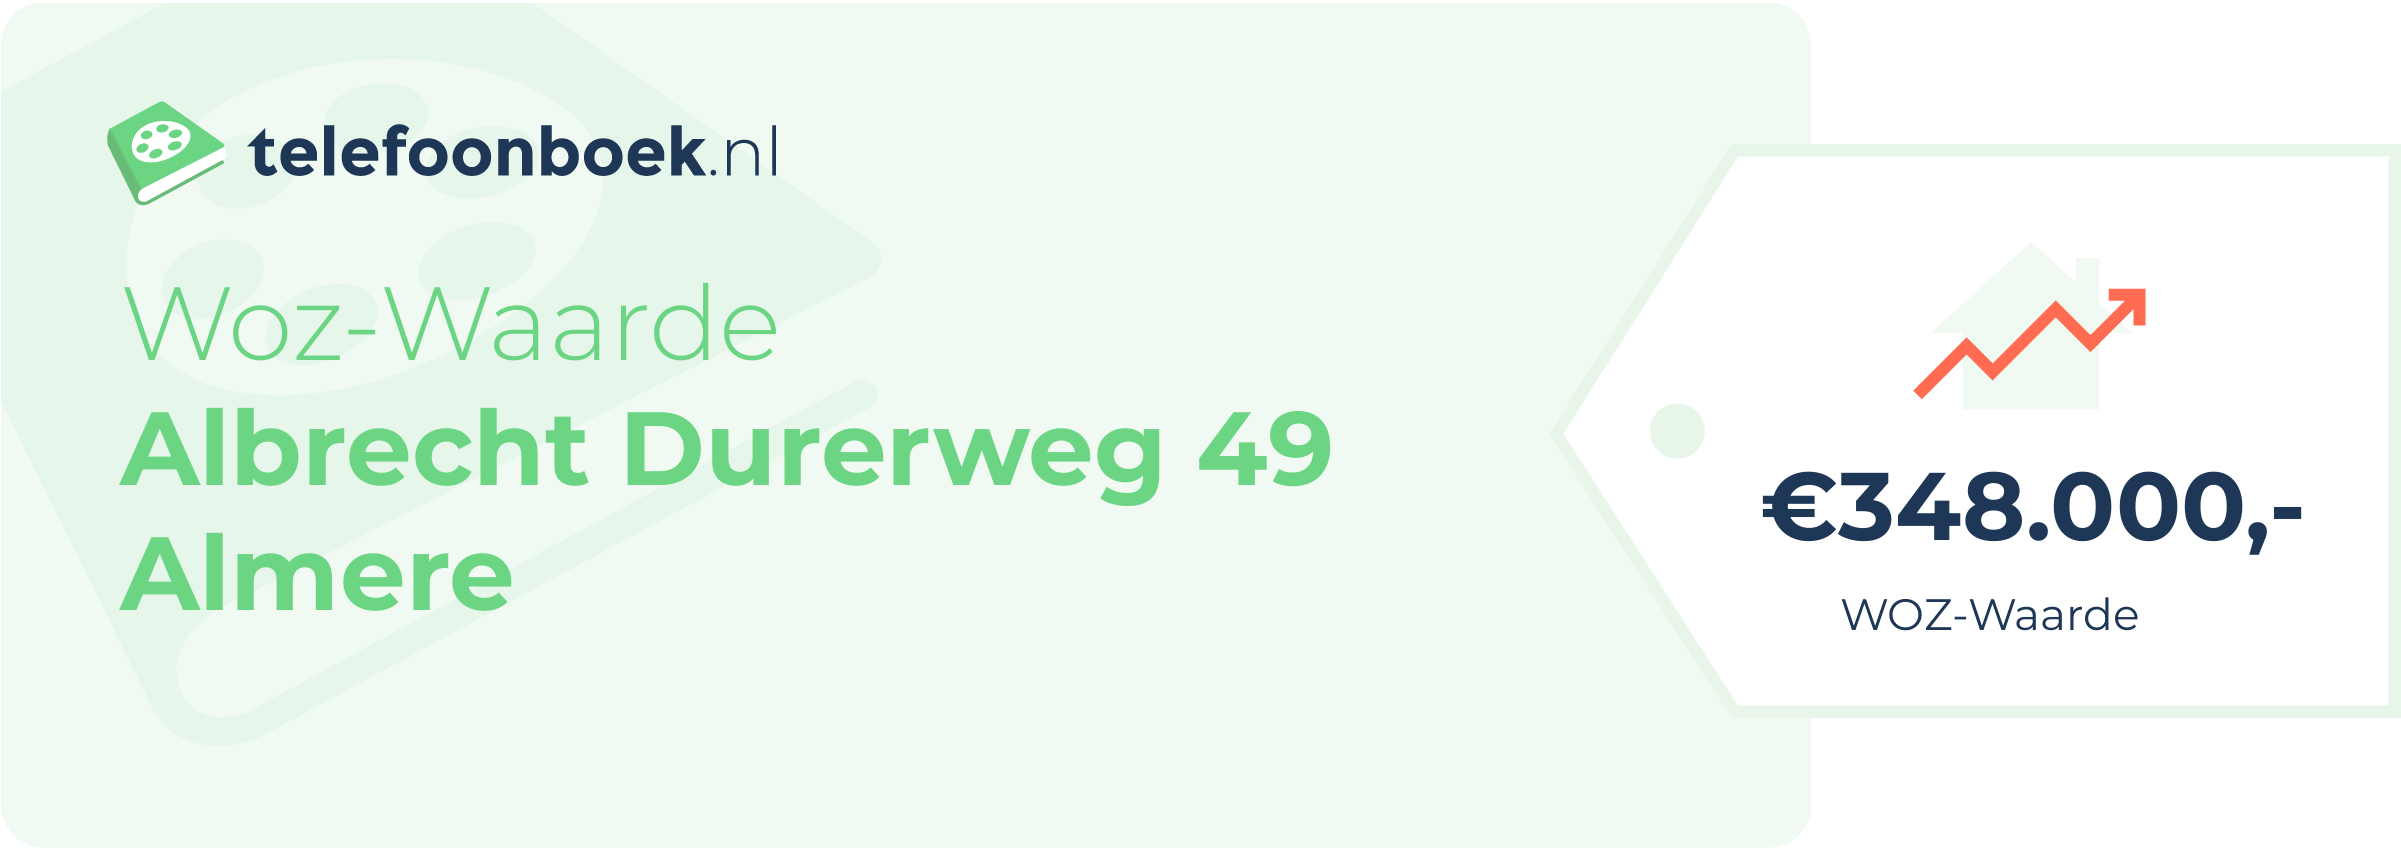 WOZ-waarde Albrecht Durerweg 49 Almere